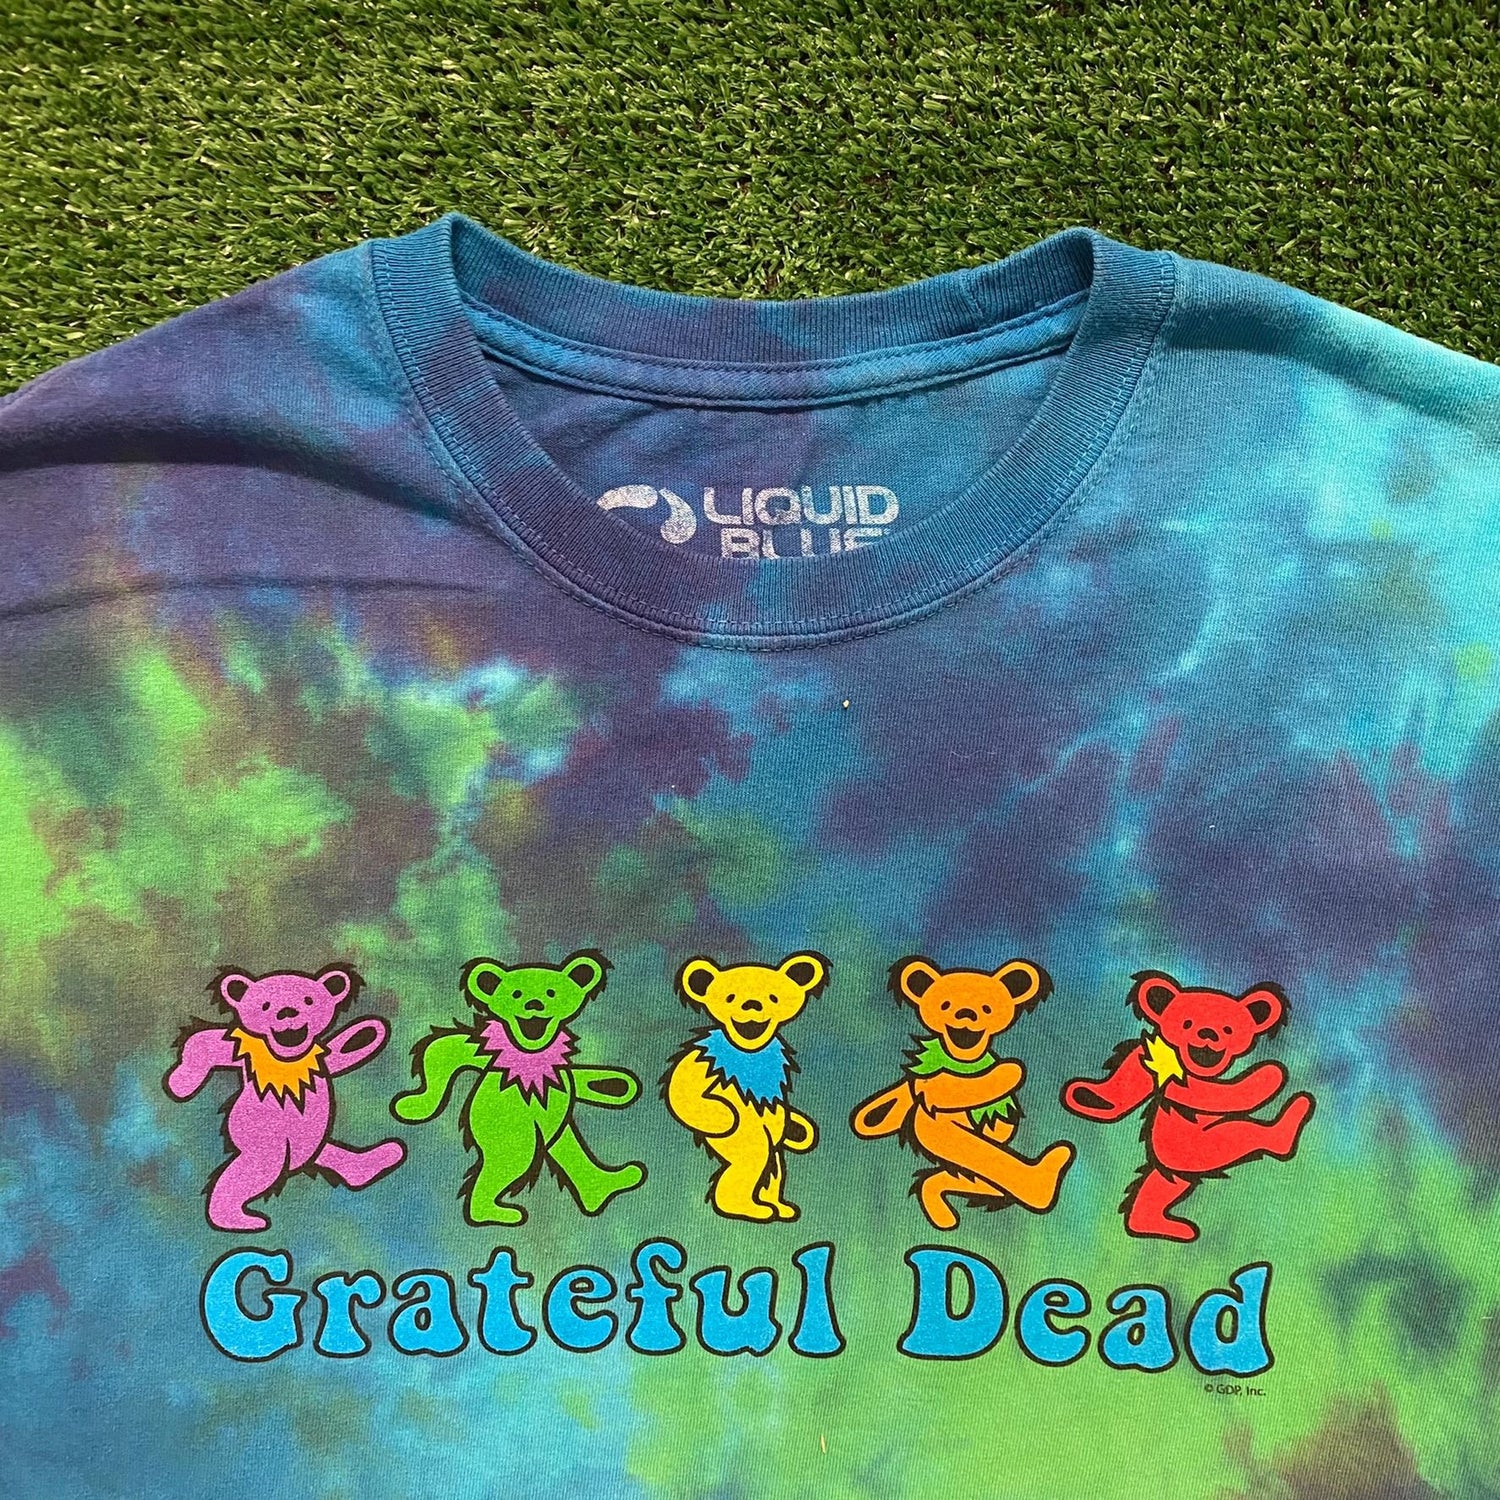 Grateful Dead - New Vintage Band T shirt - Vintage Band Shirts